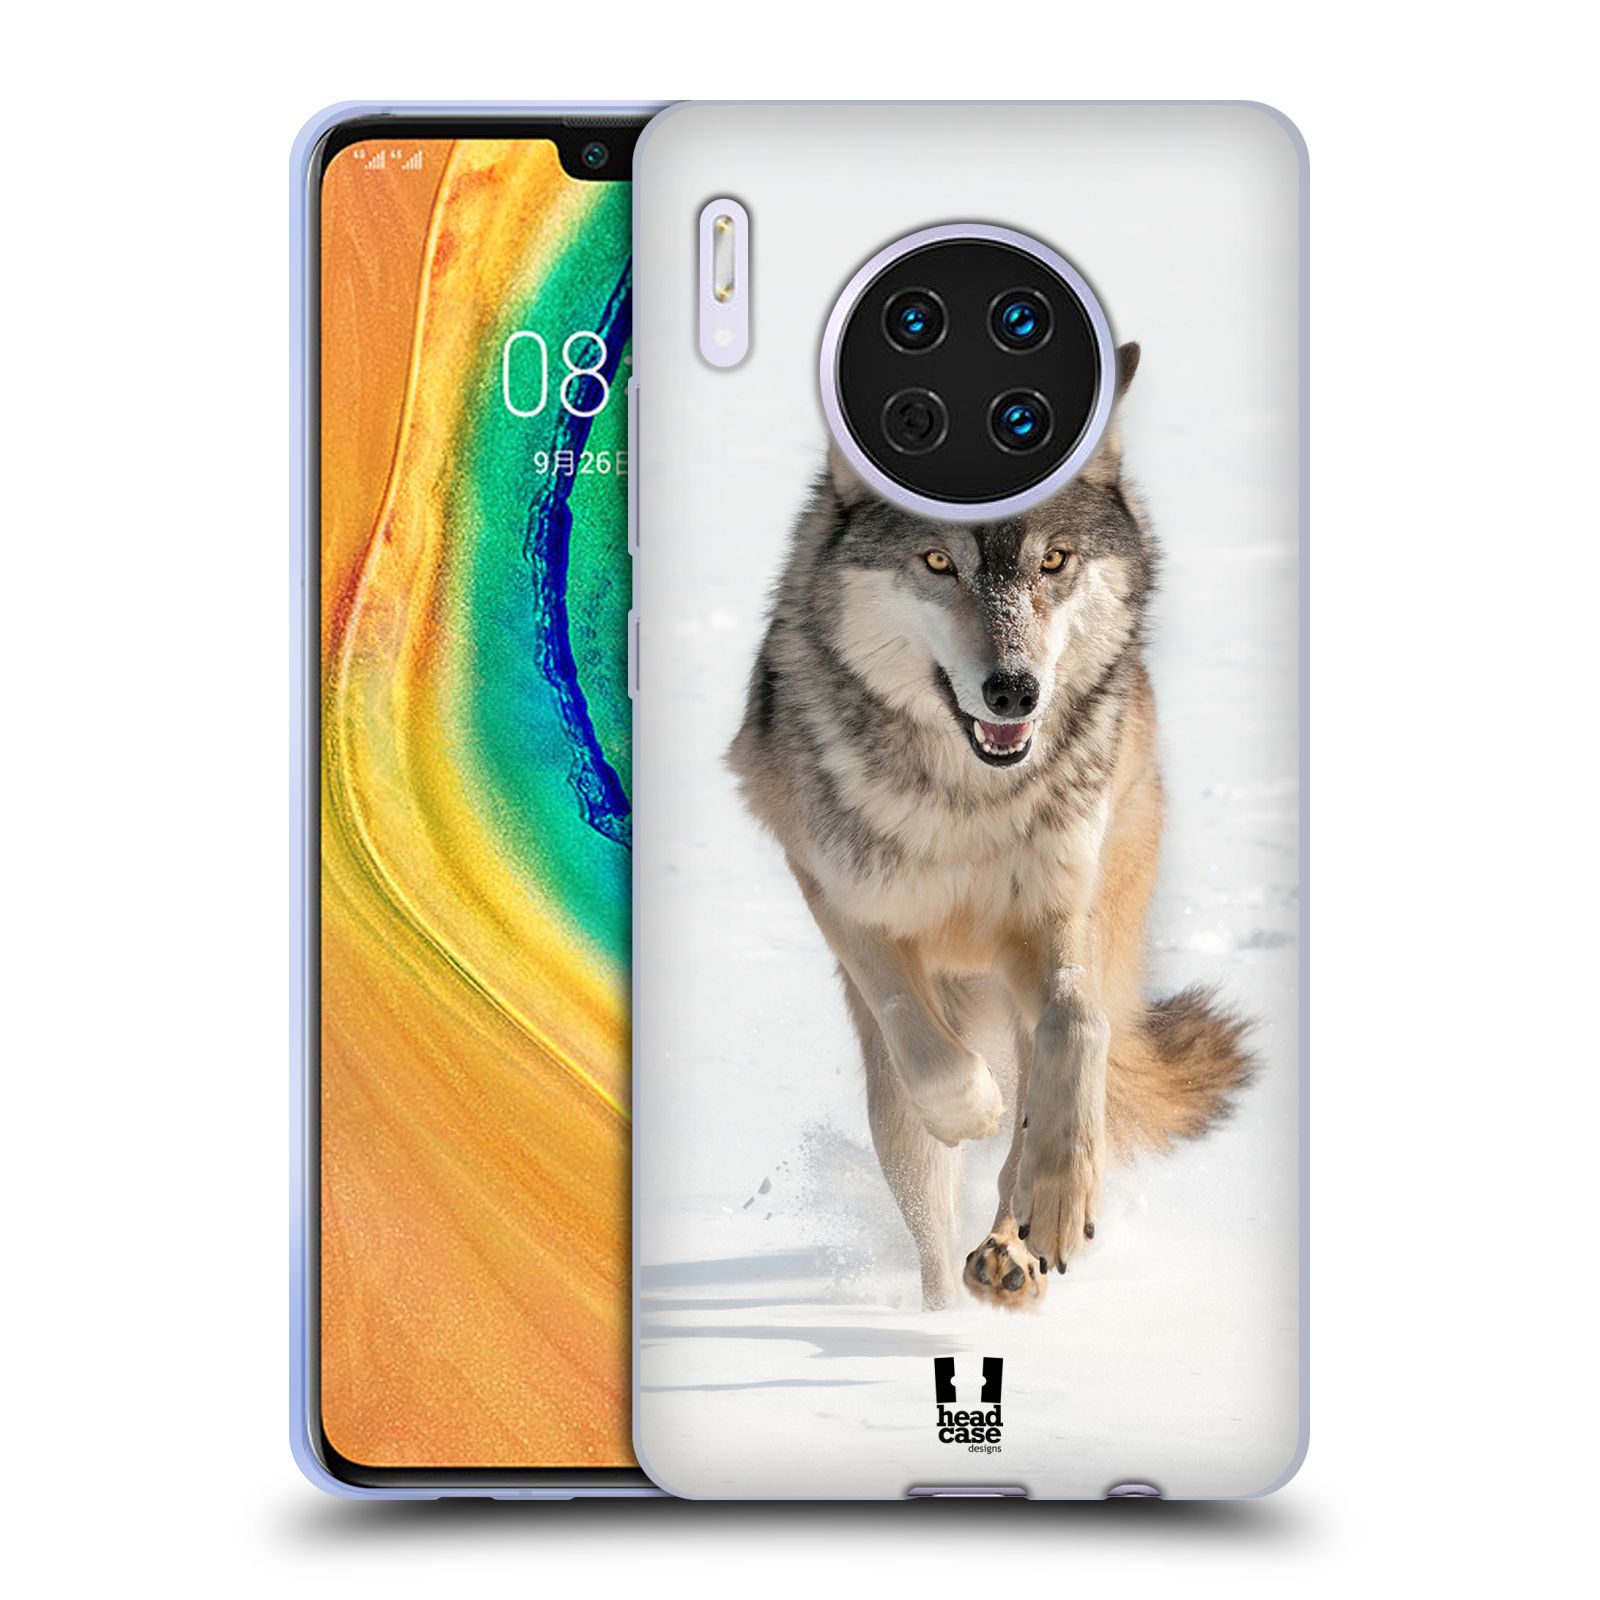 Zadní obal pro mobil Huawei Mate 30 - HEAD CASE - Svět zvířat divoký vlk